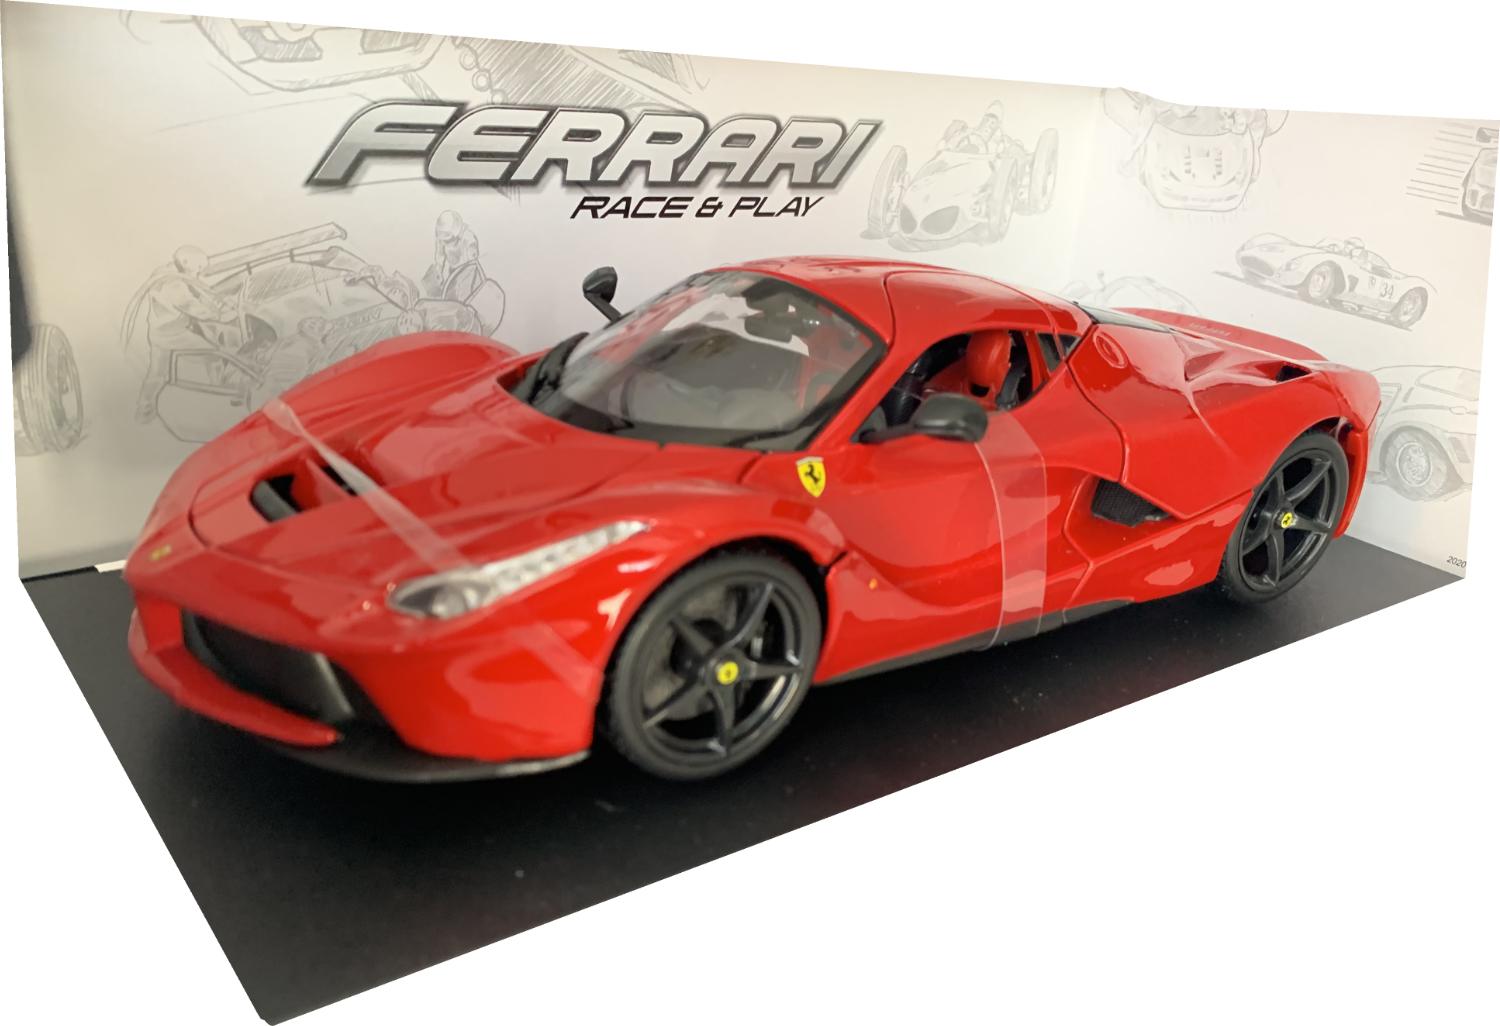 Ferrari La Ferrari in red 1:18 scale model from Bburago